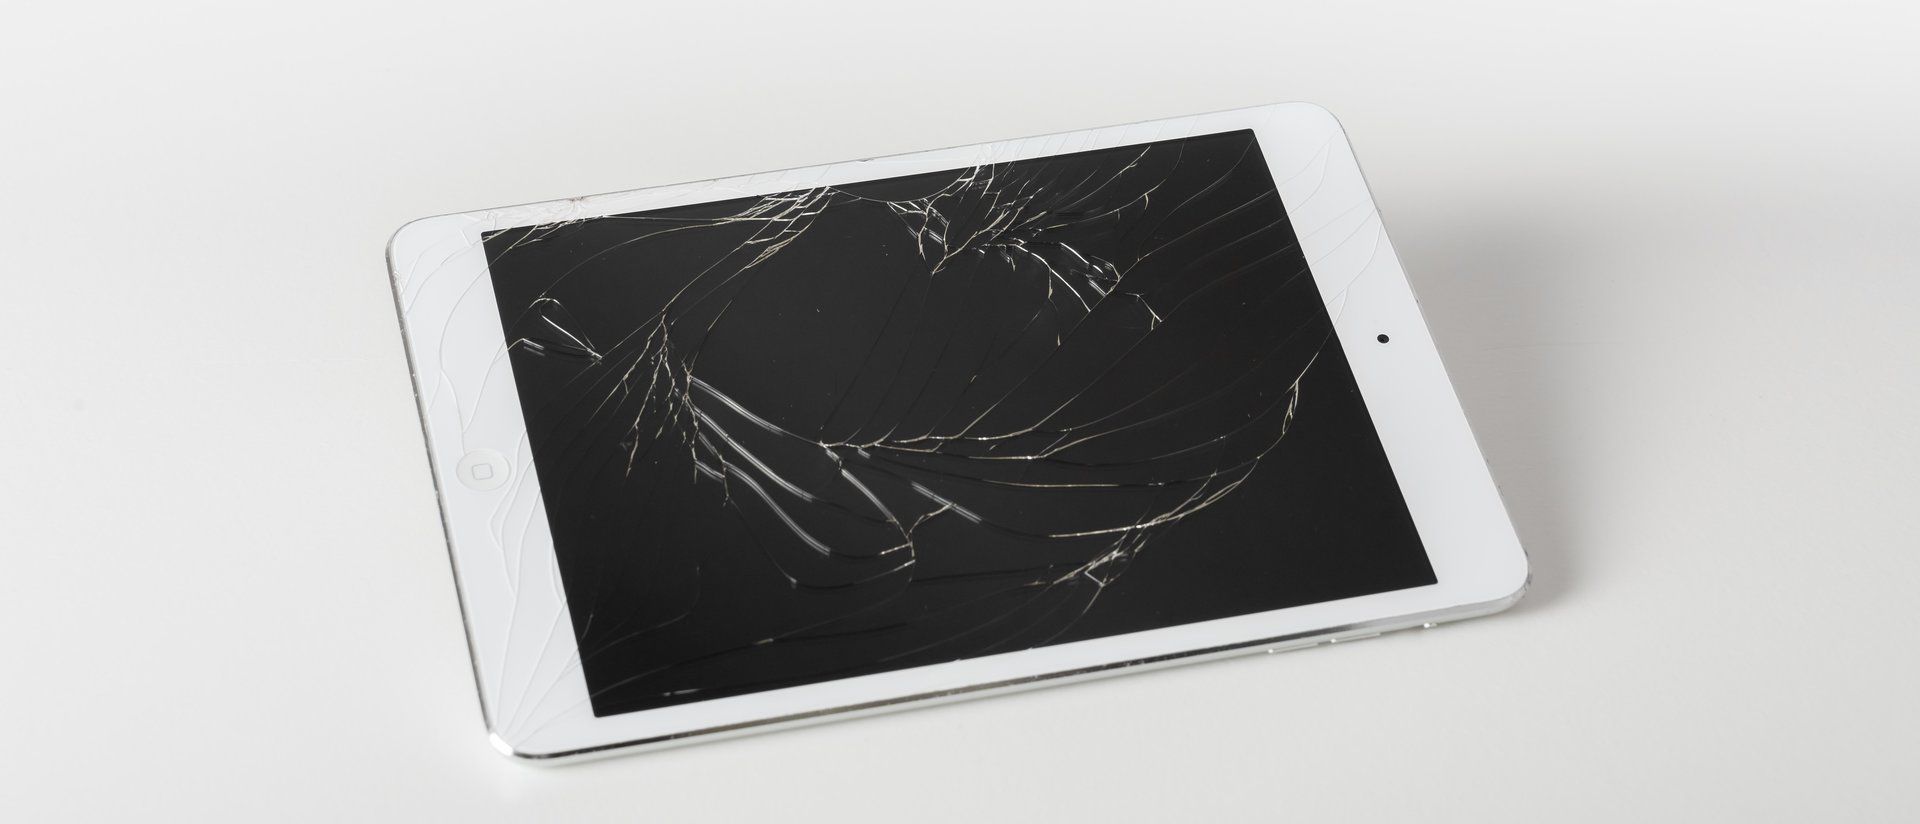 iPad cracked screen